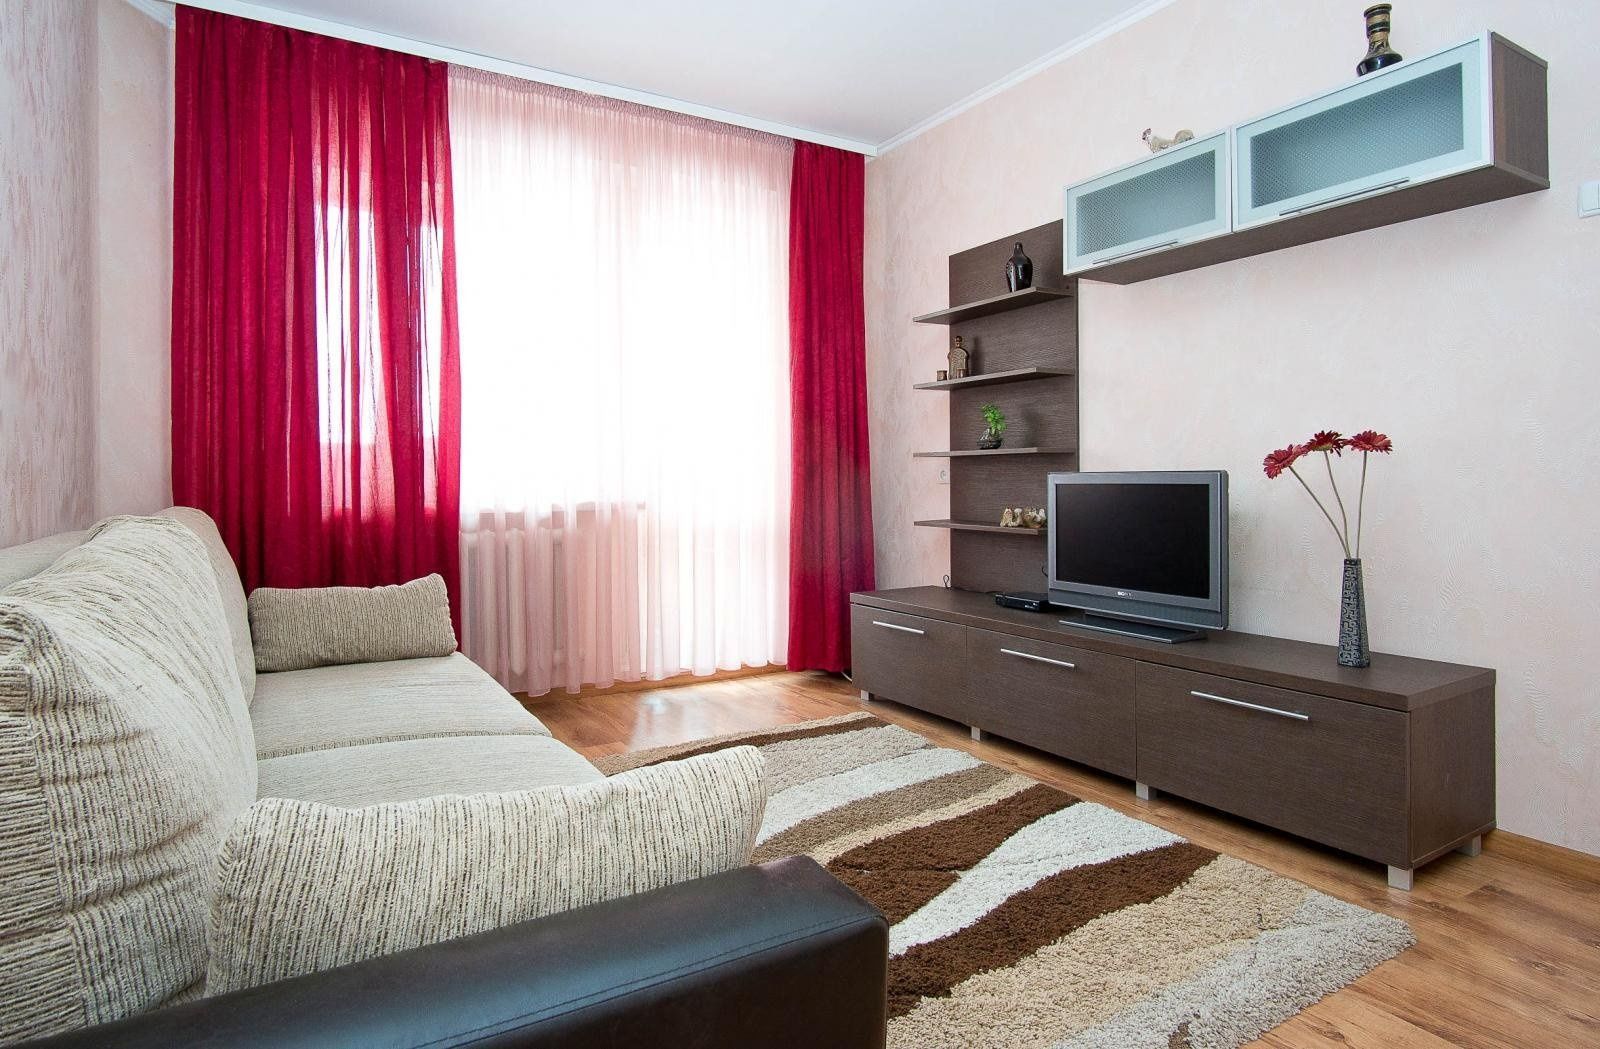 Квартиры в ставропольском крае на длительный срок. Квартира обычная. Комната обычная. Комната с ремонтом и мебелью. Однокомнатная квартира обычная.